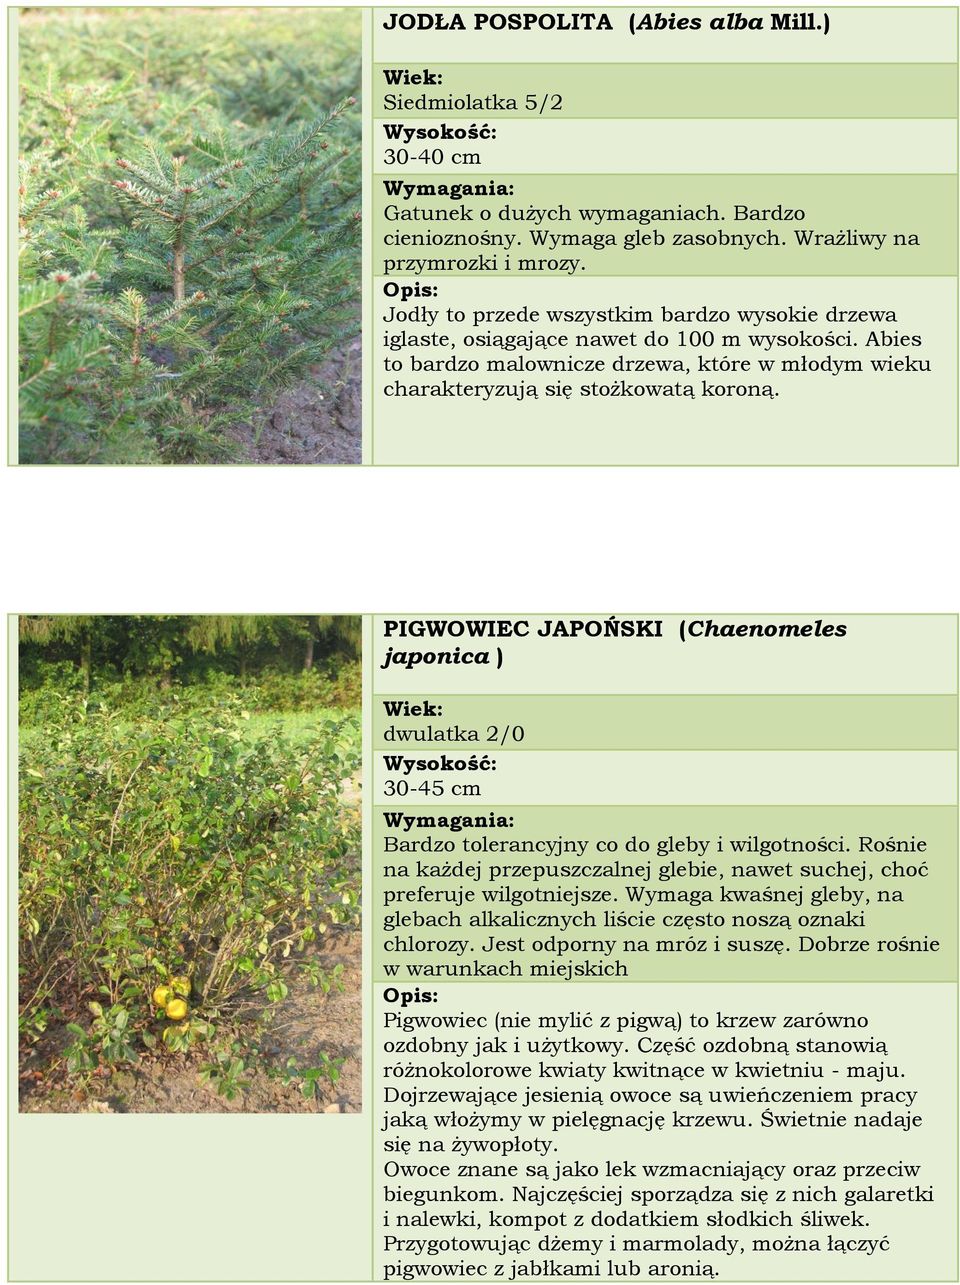 PIGWOWIEC JAPOŃSKI (Chaenomeles japonica ) dwulatka 2/0 30-45 cm Bardzo tolerancyjny co do gleby i wilgotności. Rośnie na każdej przepuszczalnej glebie, nawet suchej, choć preferuje wilgotniejsze.